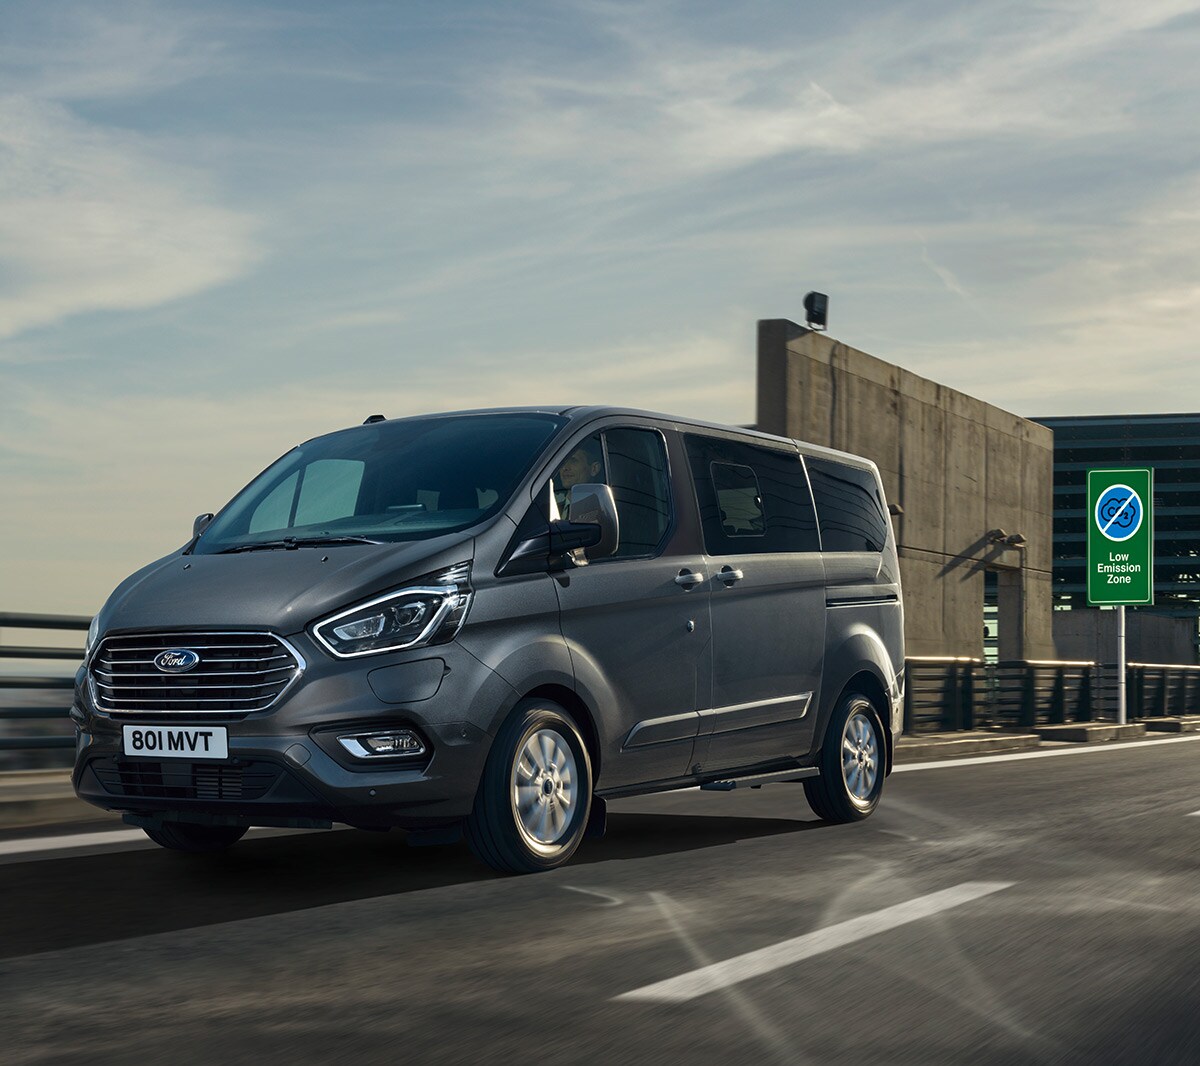 Ford Tourneo Custom Plug-in-Hybrid Grau ¾-Seitenansicht in Bewegung in grüner Umweltzone 